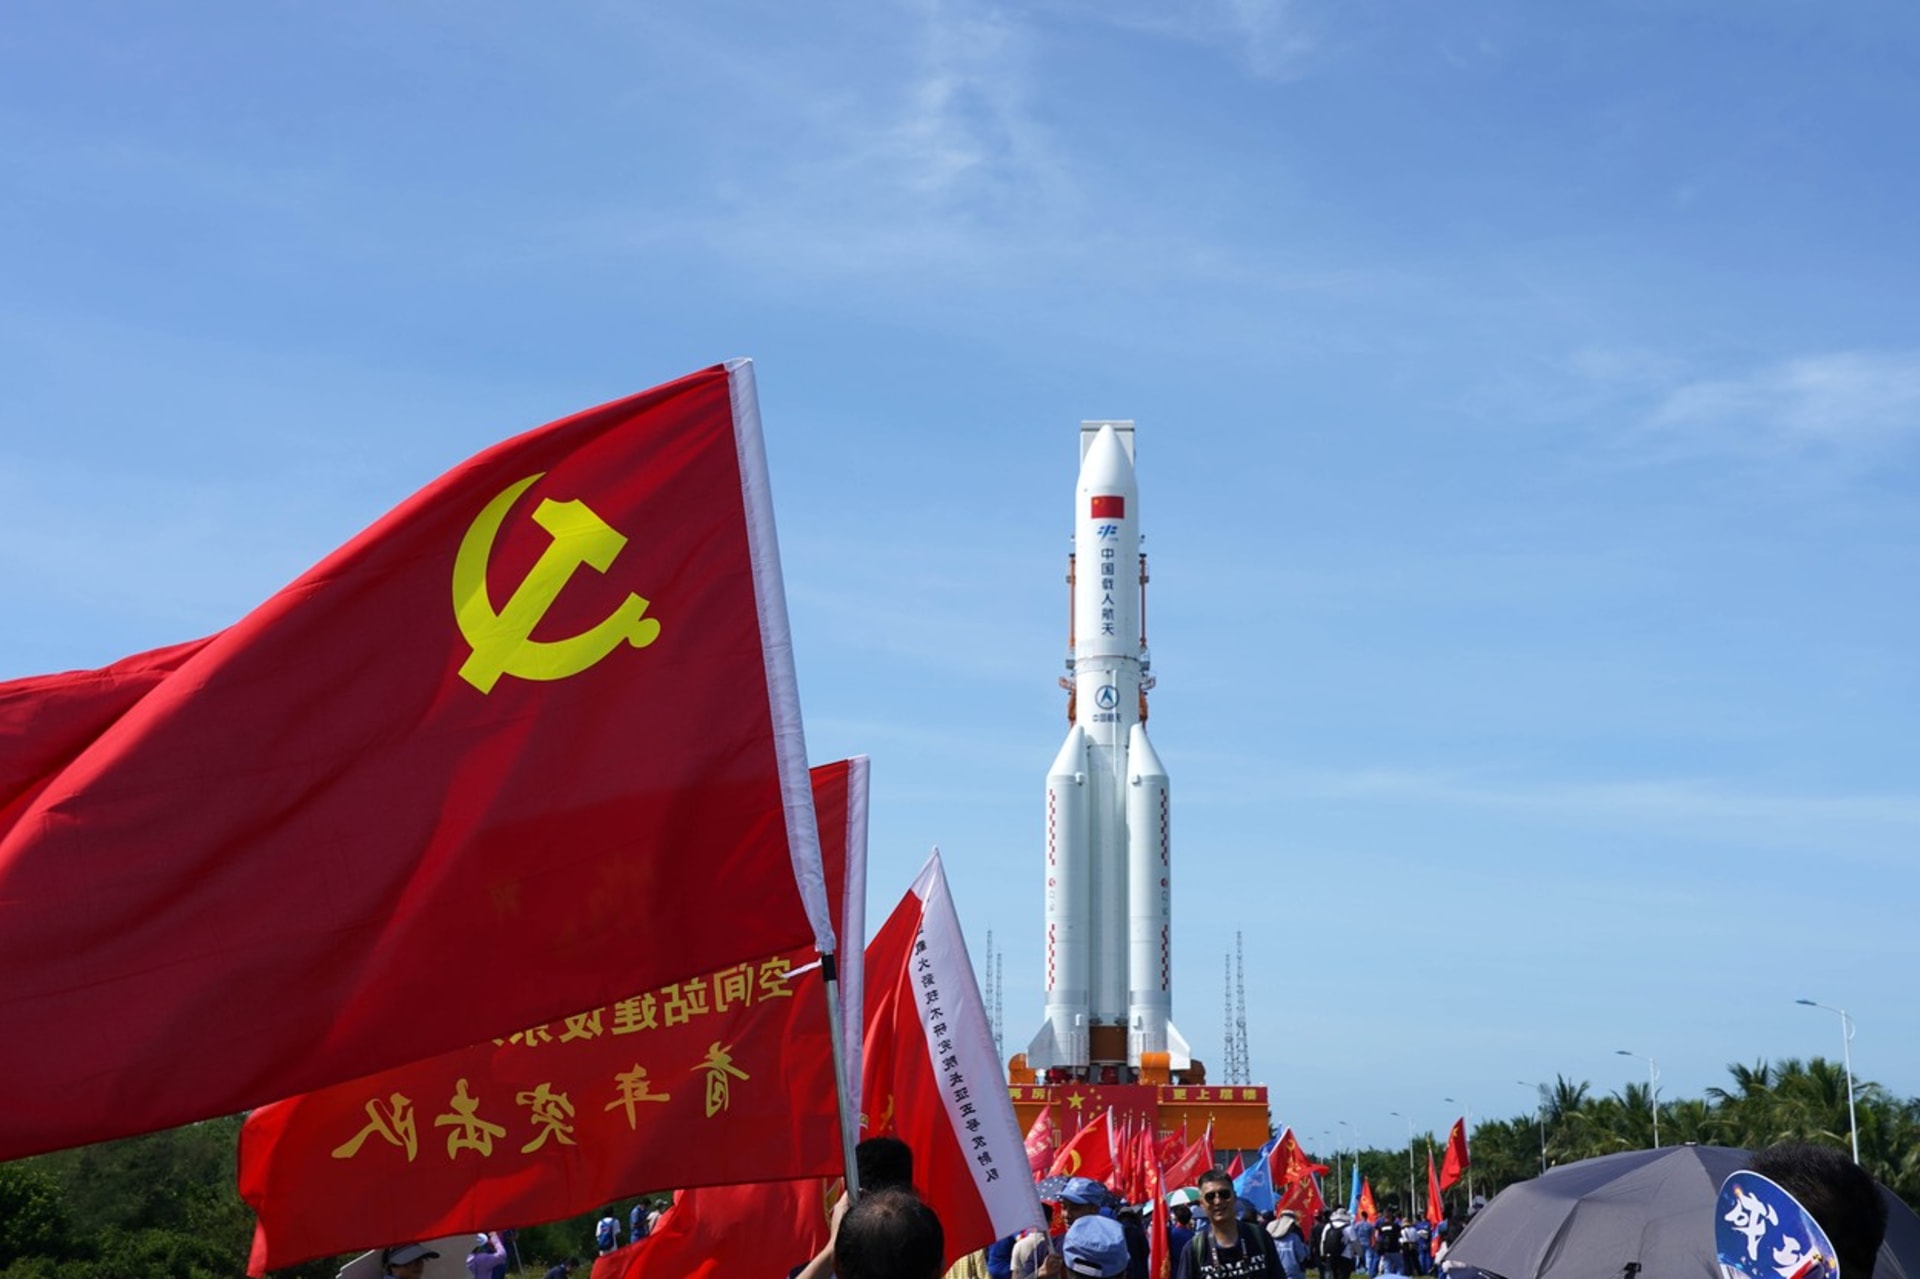 Čínská raketa padá k zemi a nikdo neví, kam dopadne 1